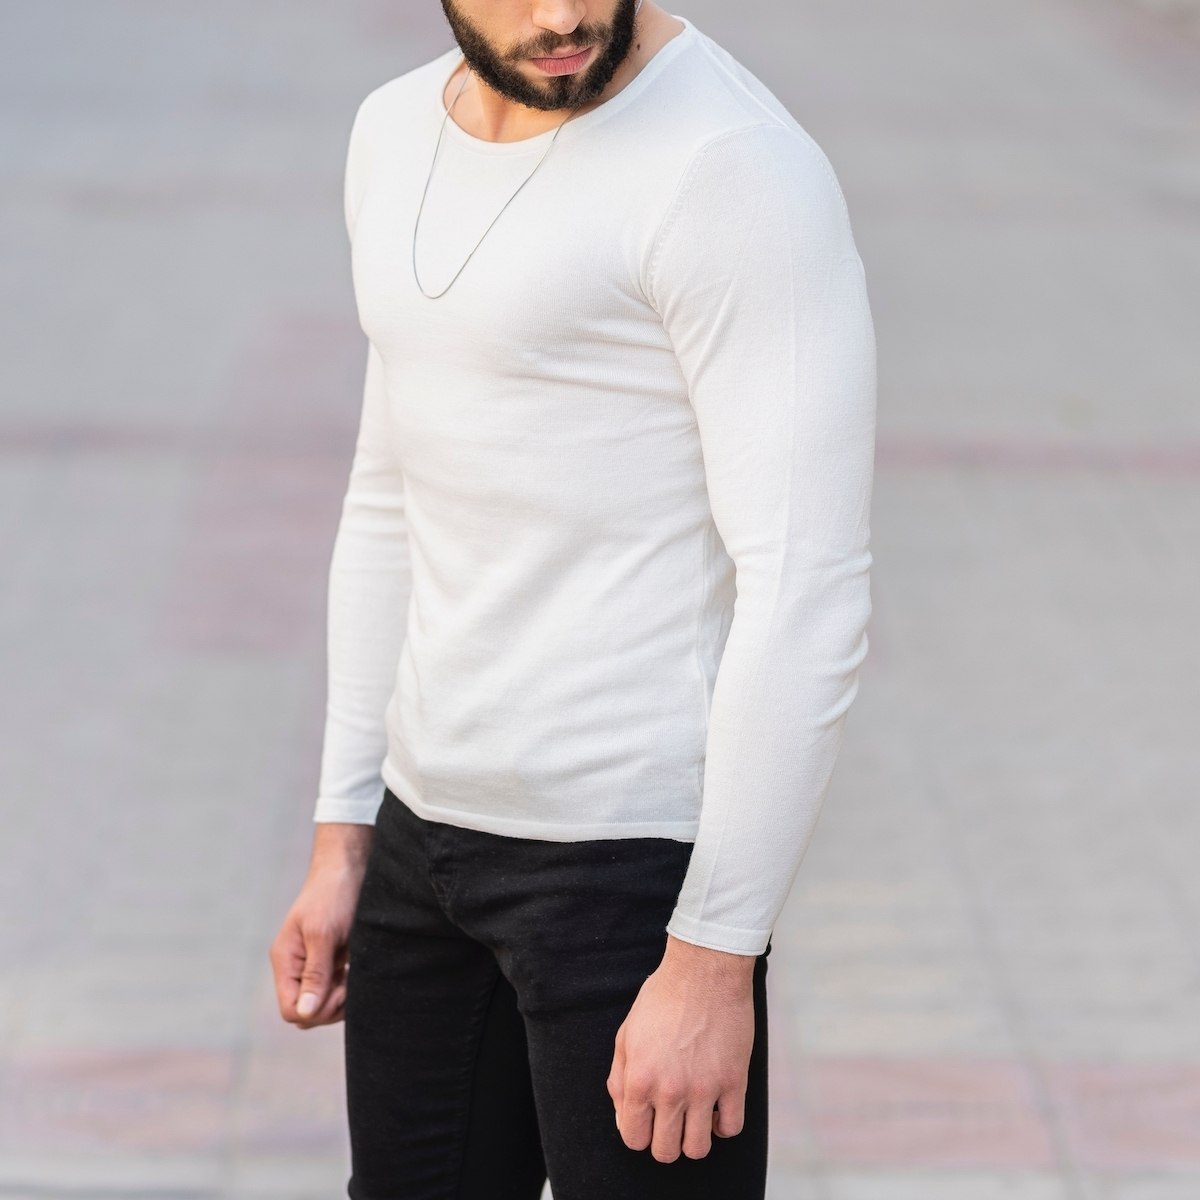 Herren Slim-Fit Sweater mit rundem Kragen in weiß - 2